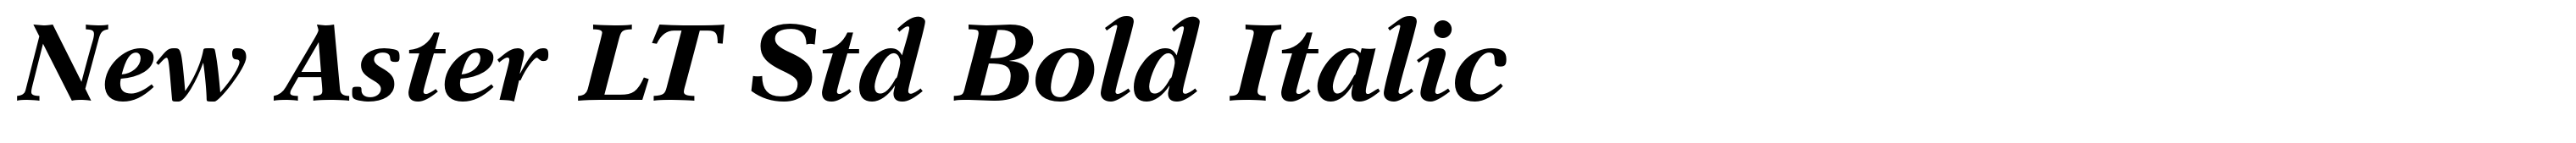 New Aster LT Std Bold Italic